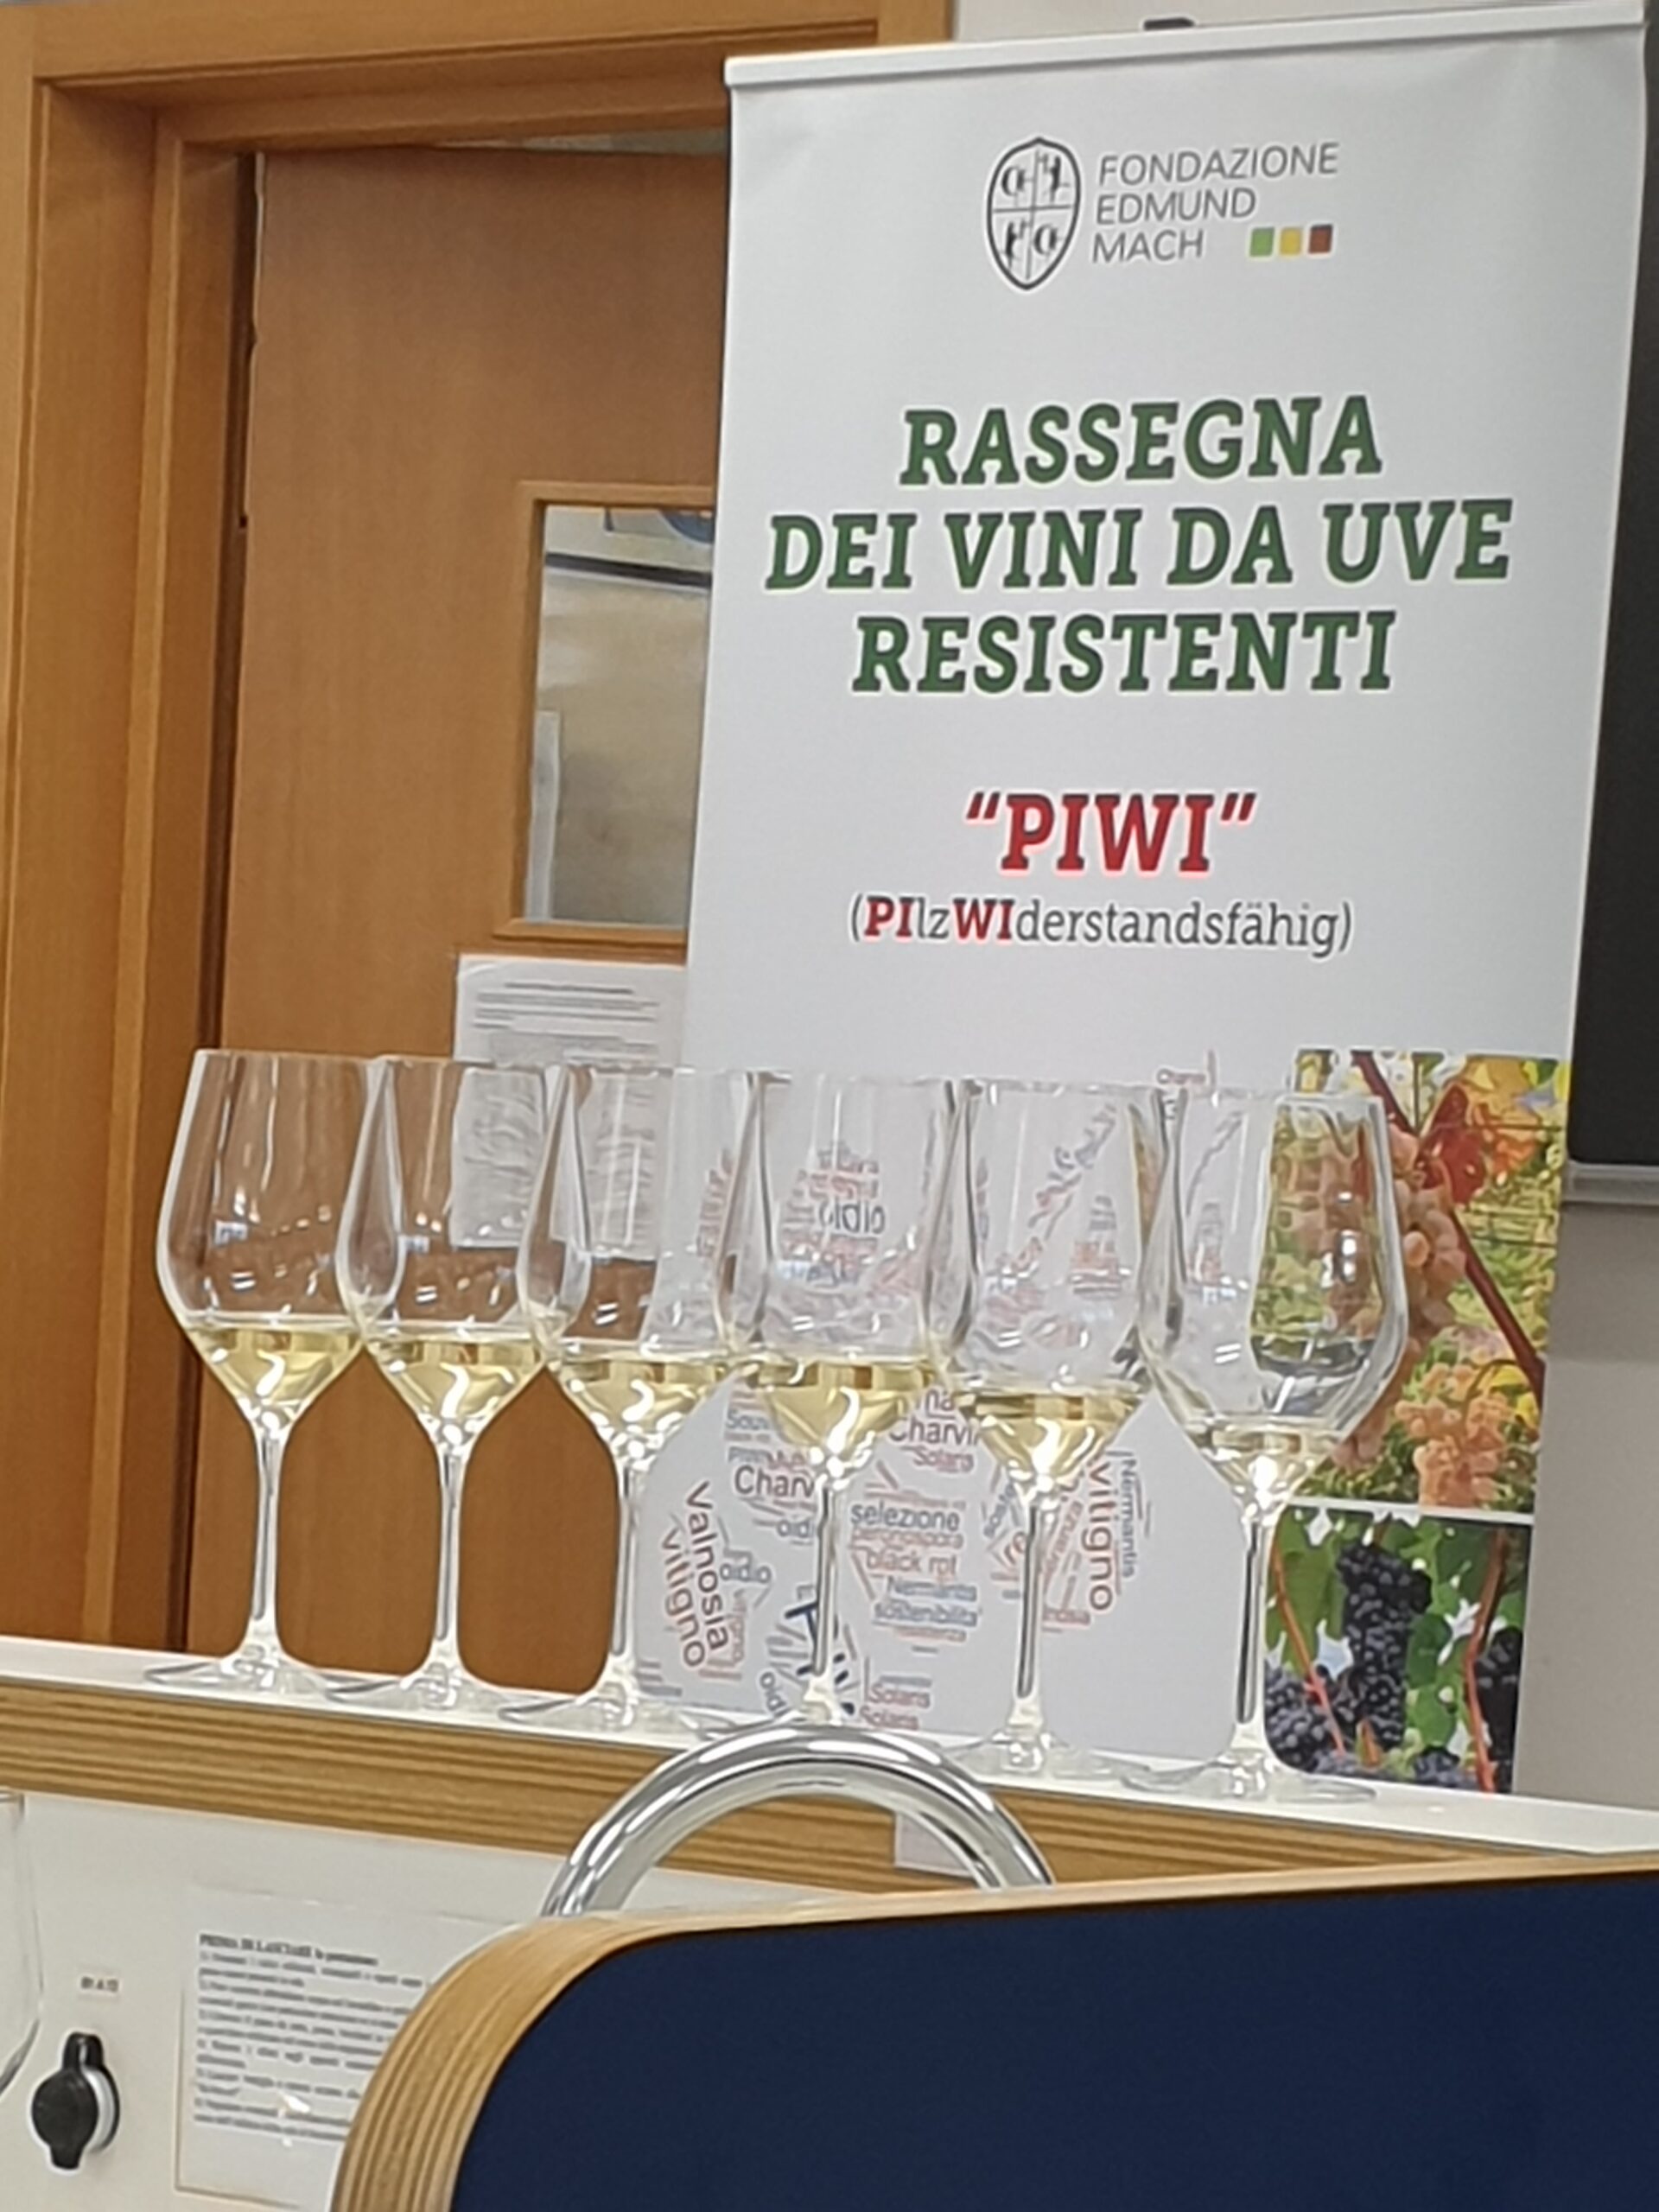 Batteria di vini bianchi fermi da uve Piwi, foto di Rosaria Benedetti